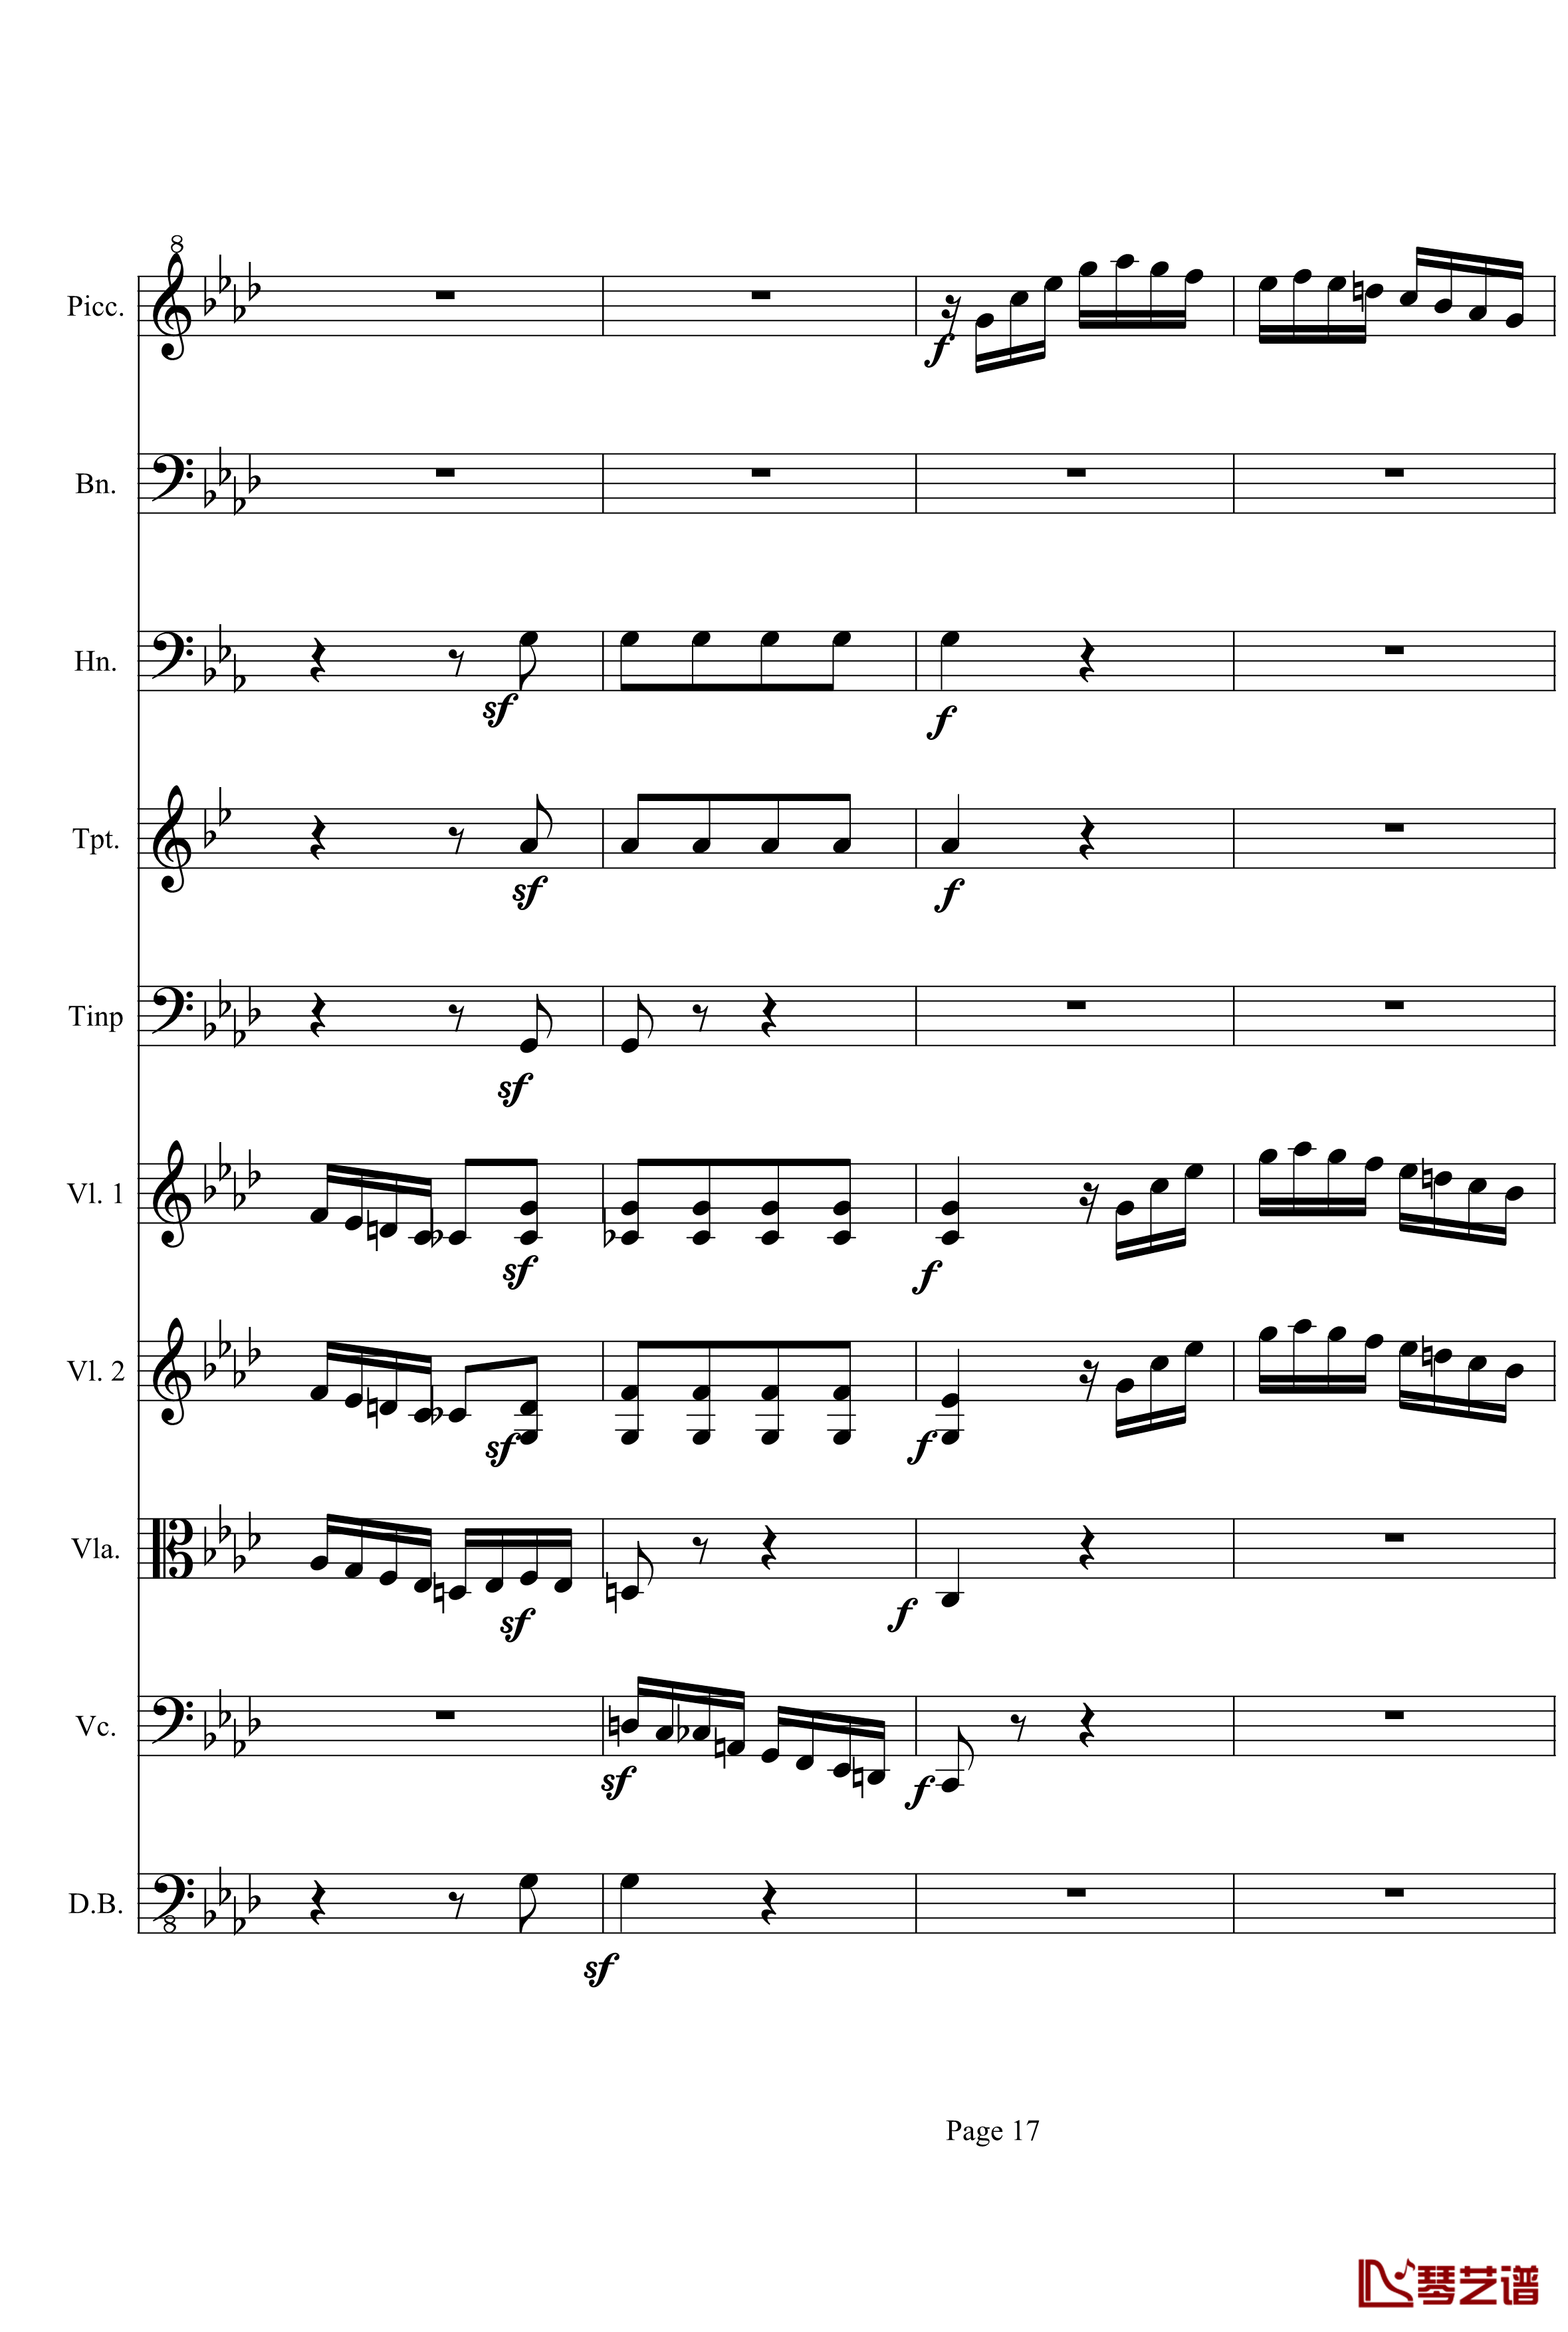 奏鸣曲之交响第23首Ⅲ钢琴谱--贝多芬-beethoven17